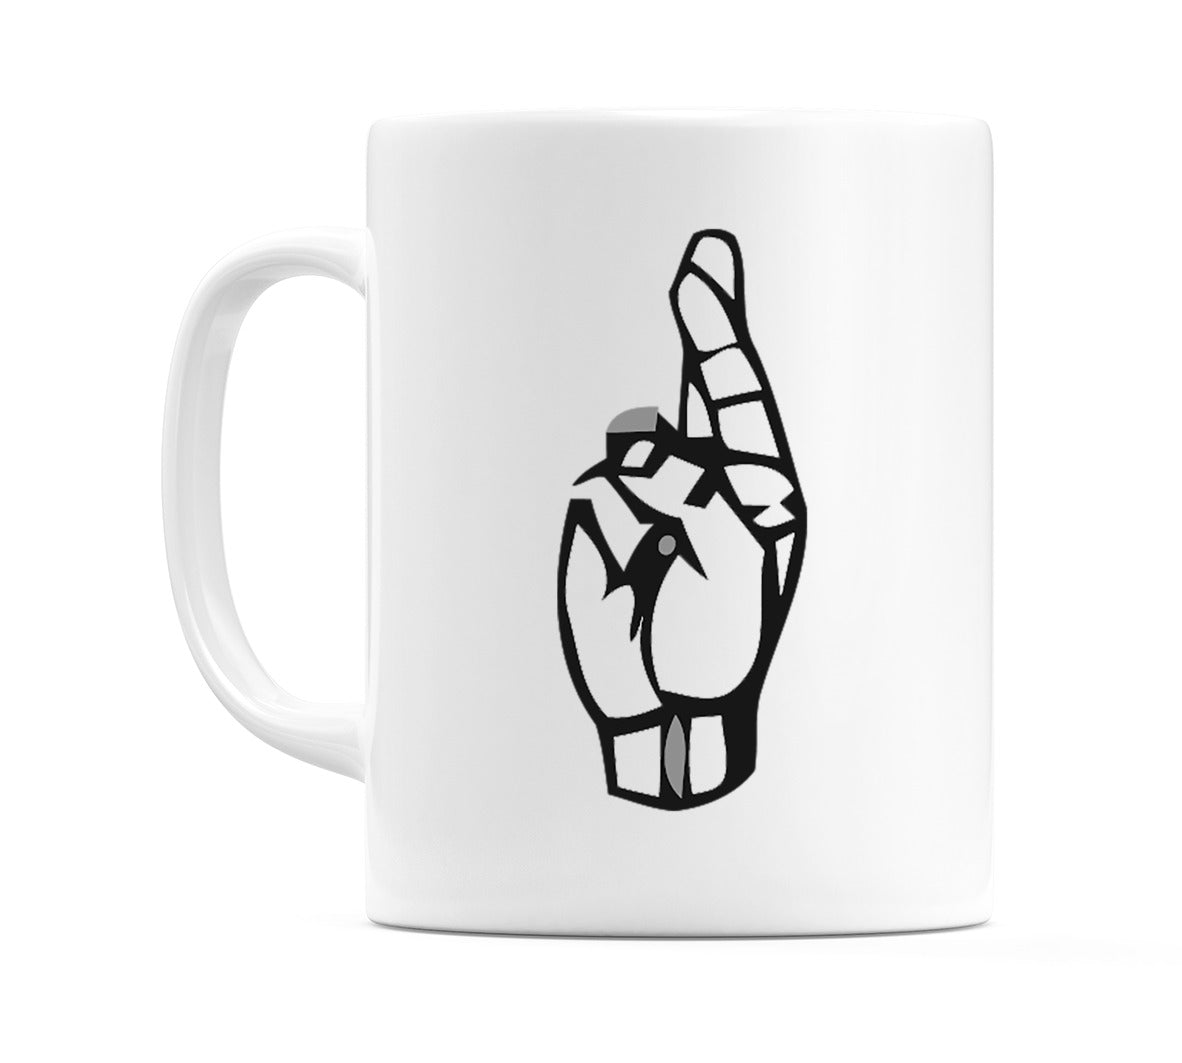 US Sign Language Letter R Mug